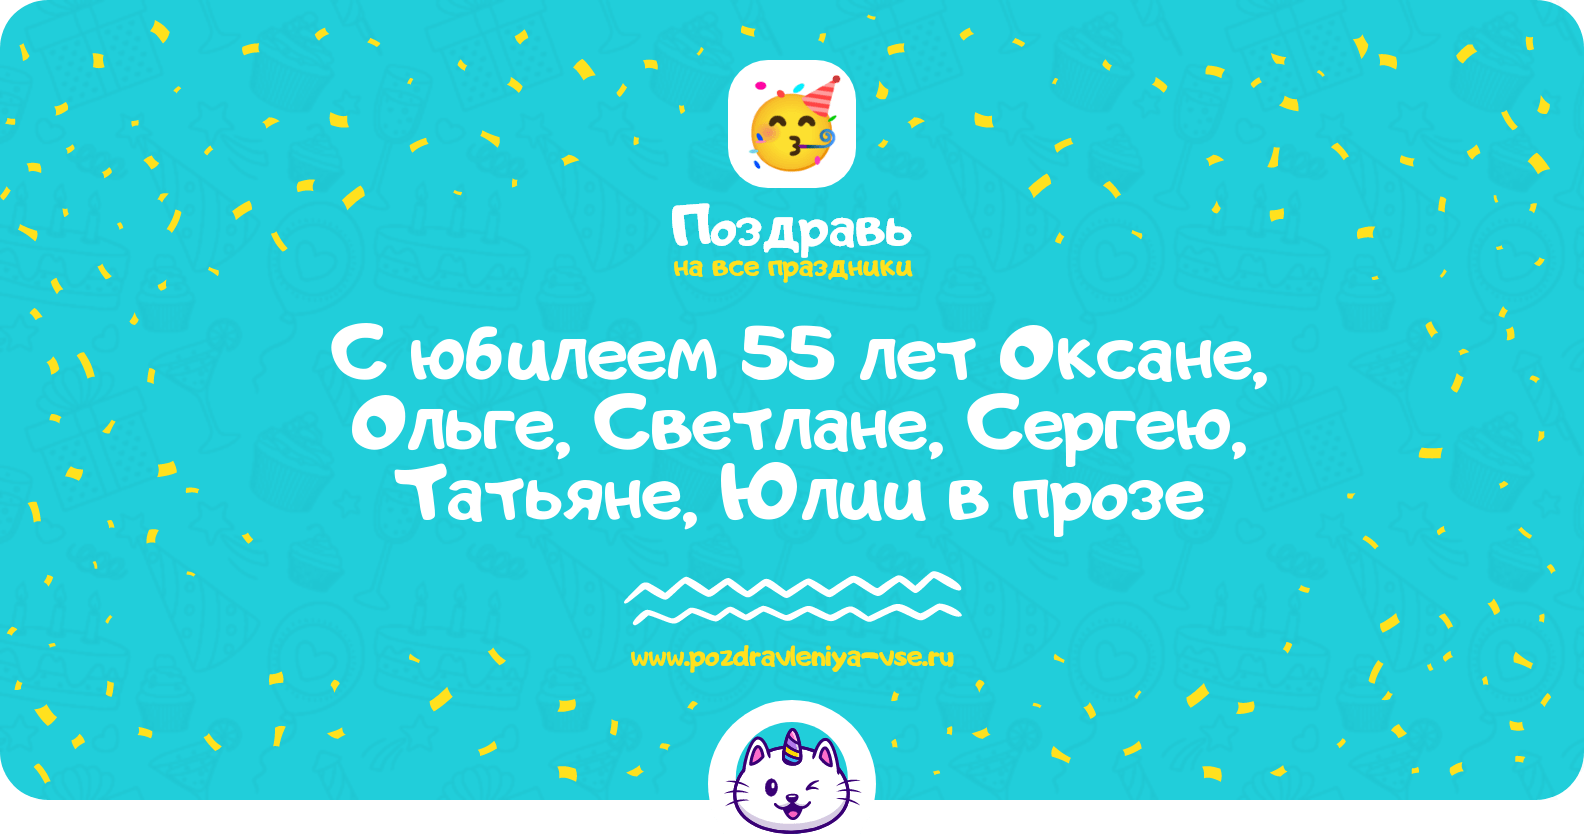 Поздравления с юбилеем 55 лет Оксане, Ольге, Светлане, Сергею, Татьяне, Юлии в прозе